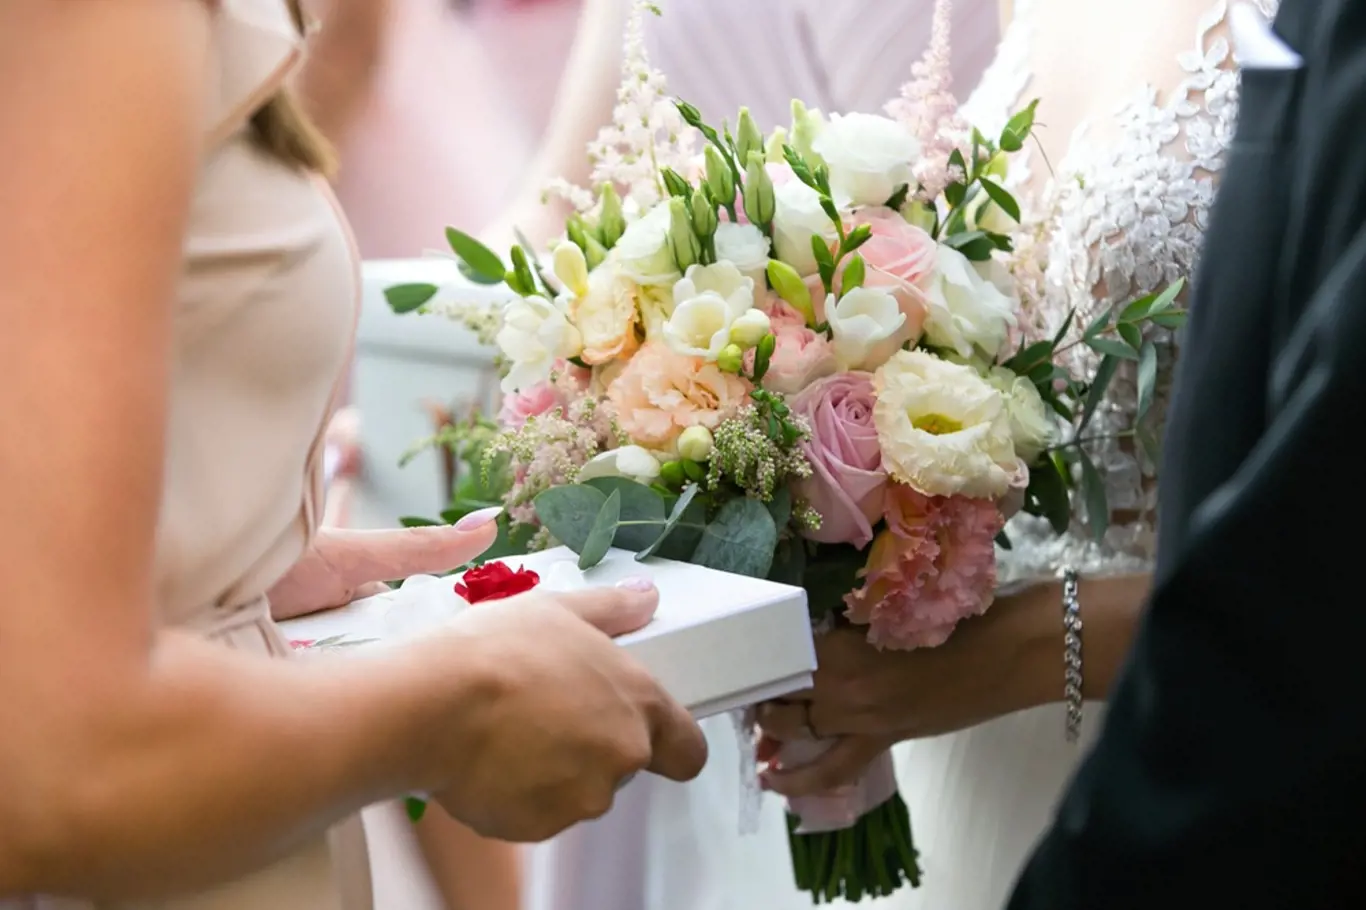 Vybrat ten správný svatební dar není jen tak